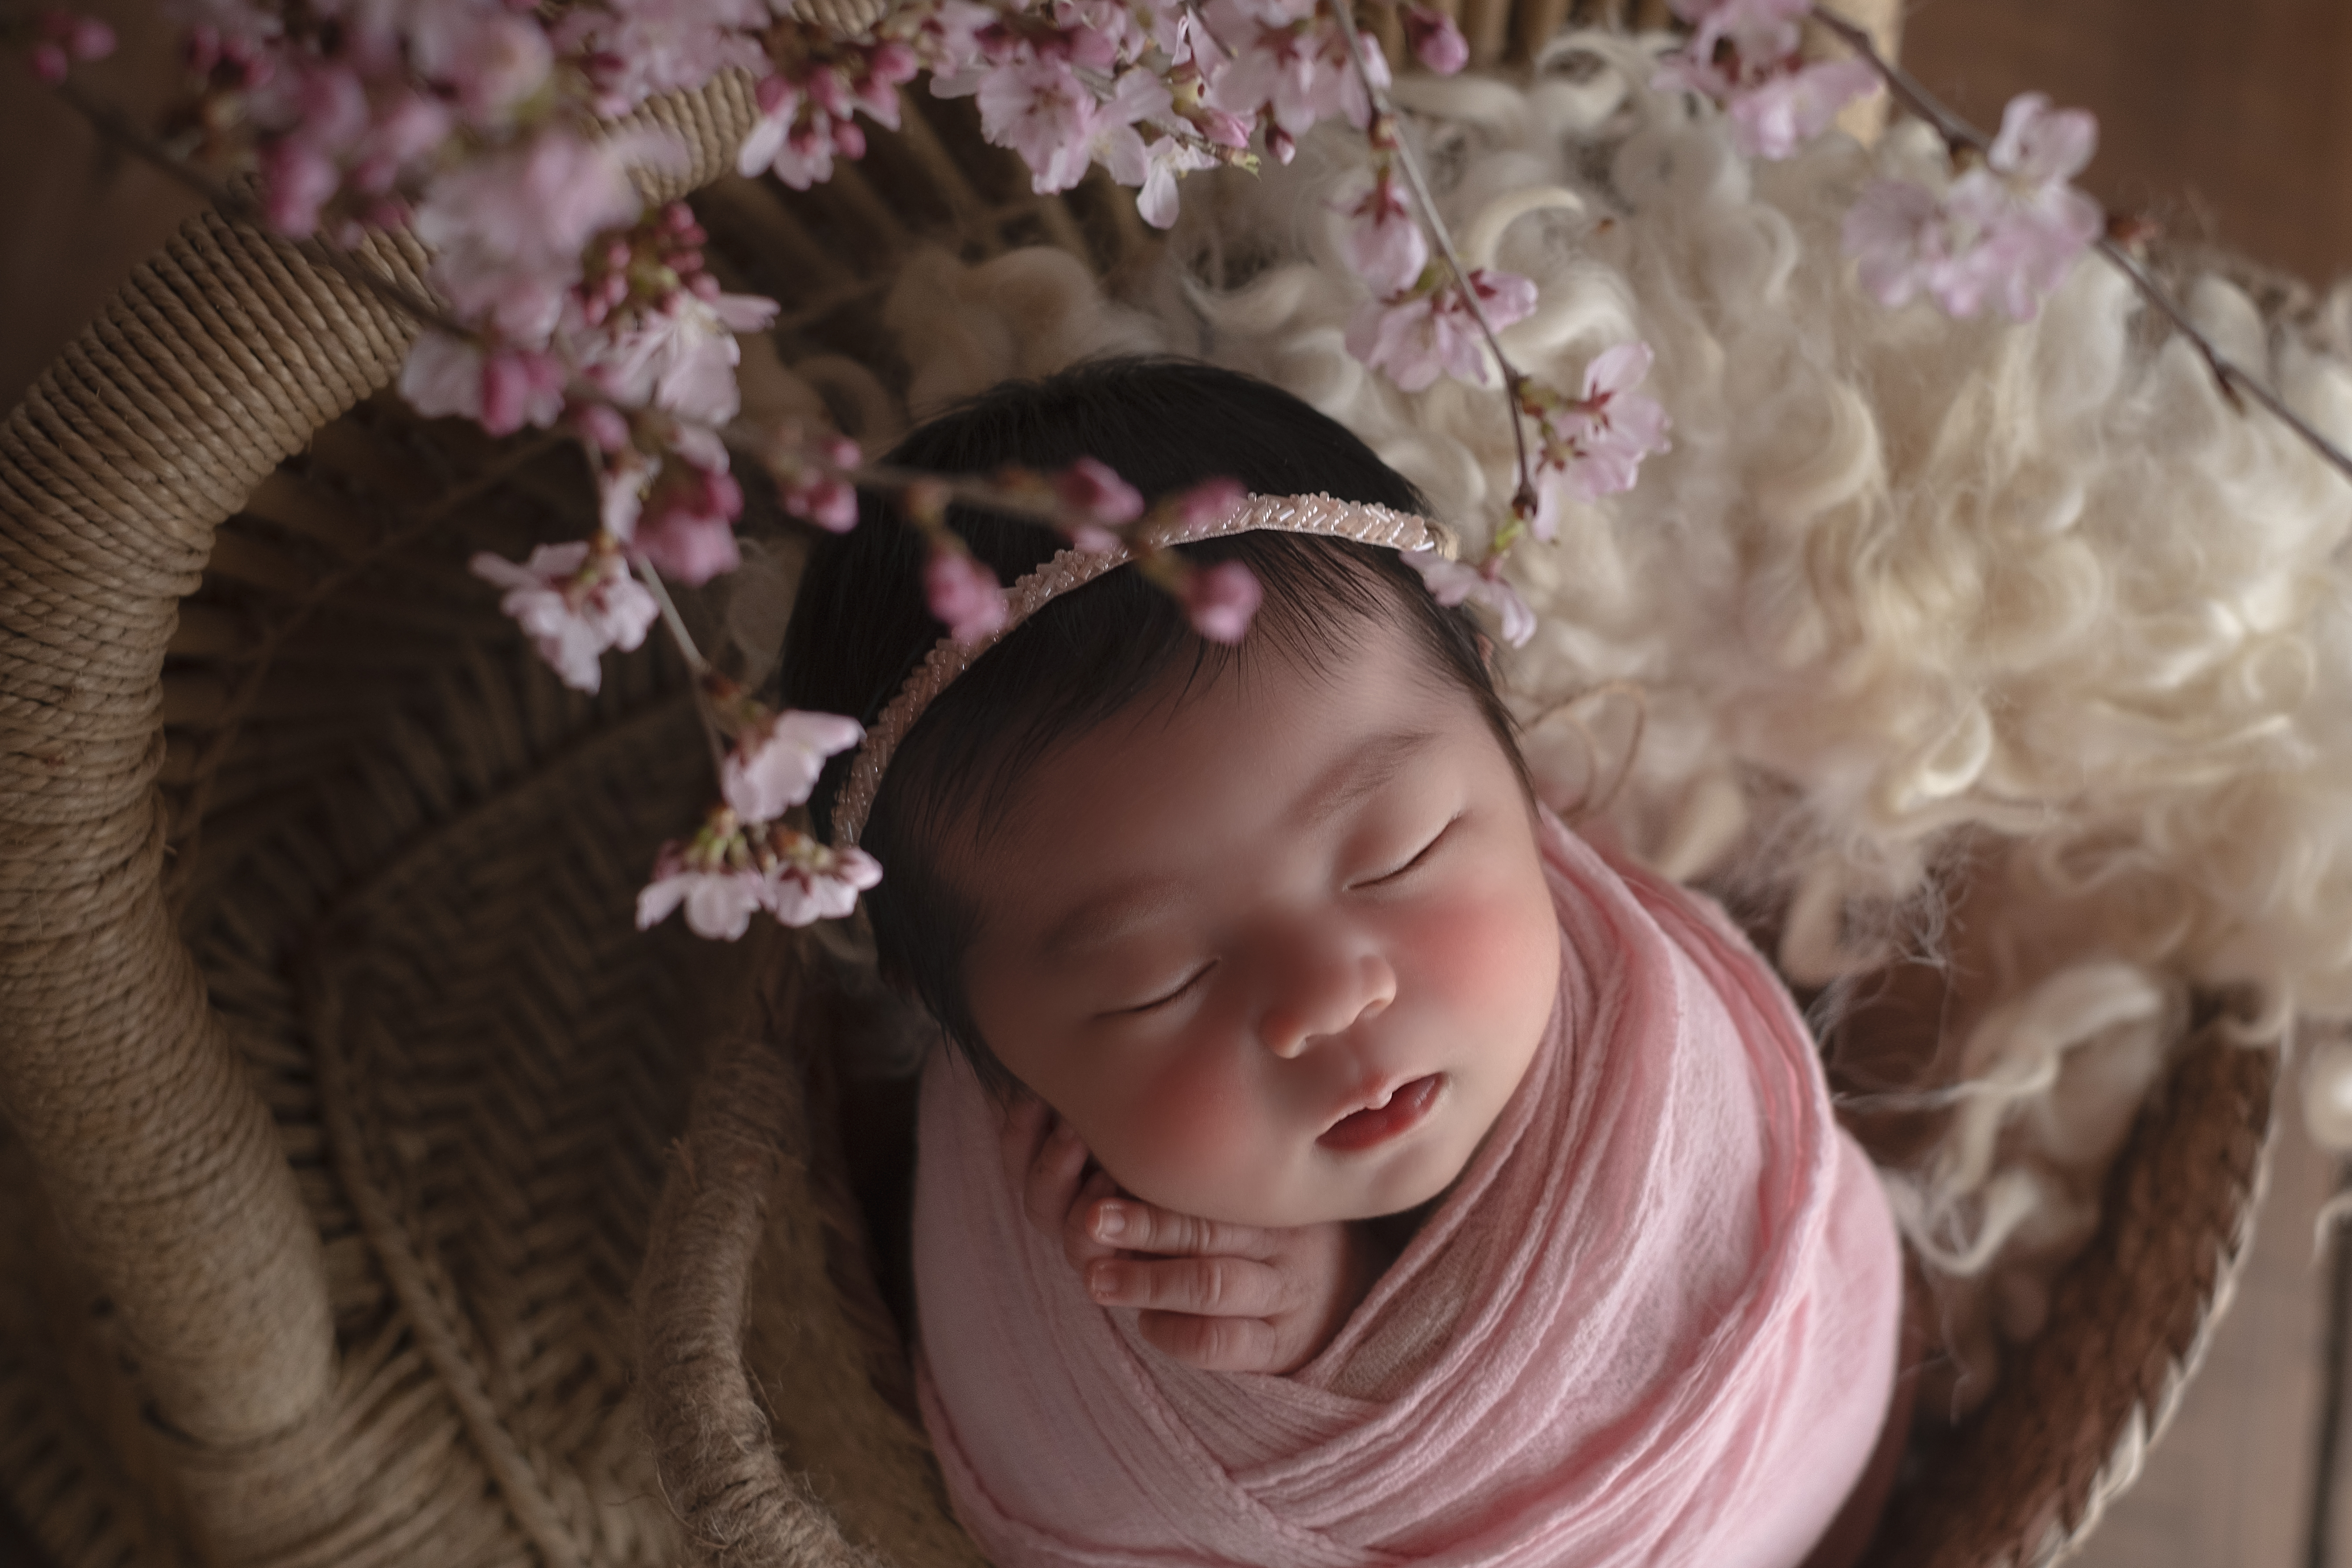 滋賀・京都・大阪ニューボーンフォトの撮影・出張撮影ならMimi newborn photography